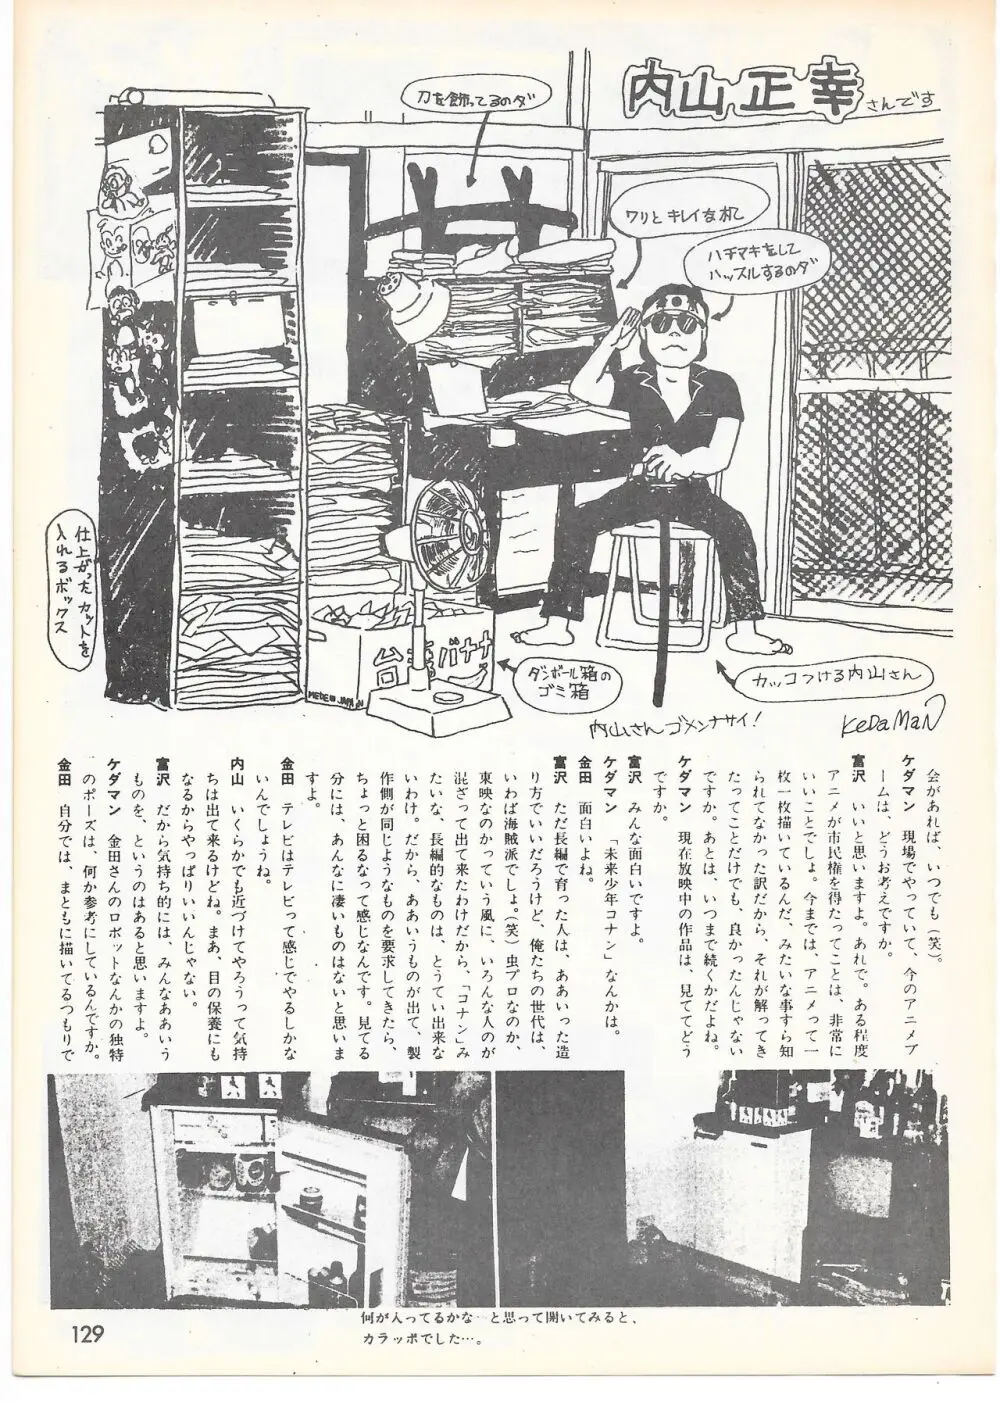 THE ANIMATOR 1 金田伊功特集号 124ページ